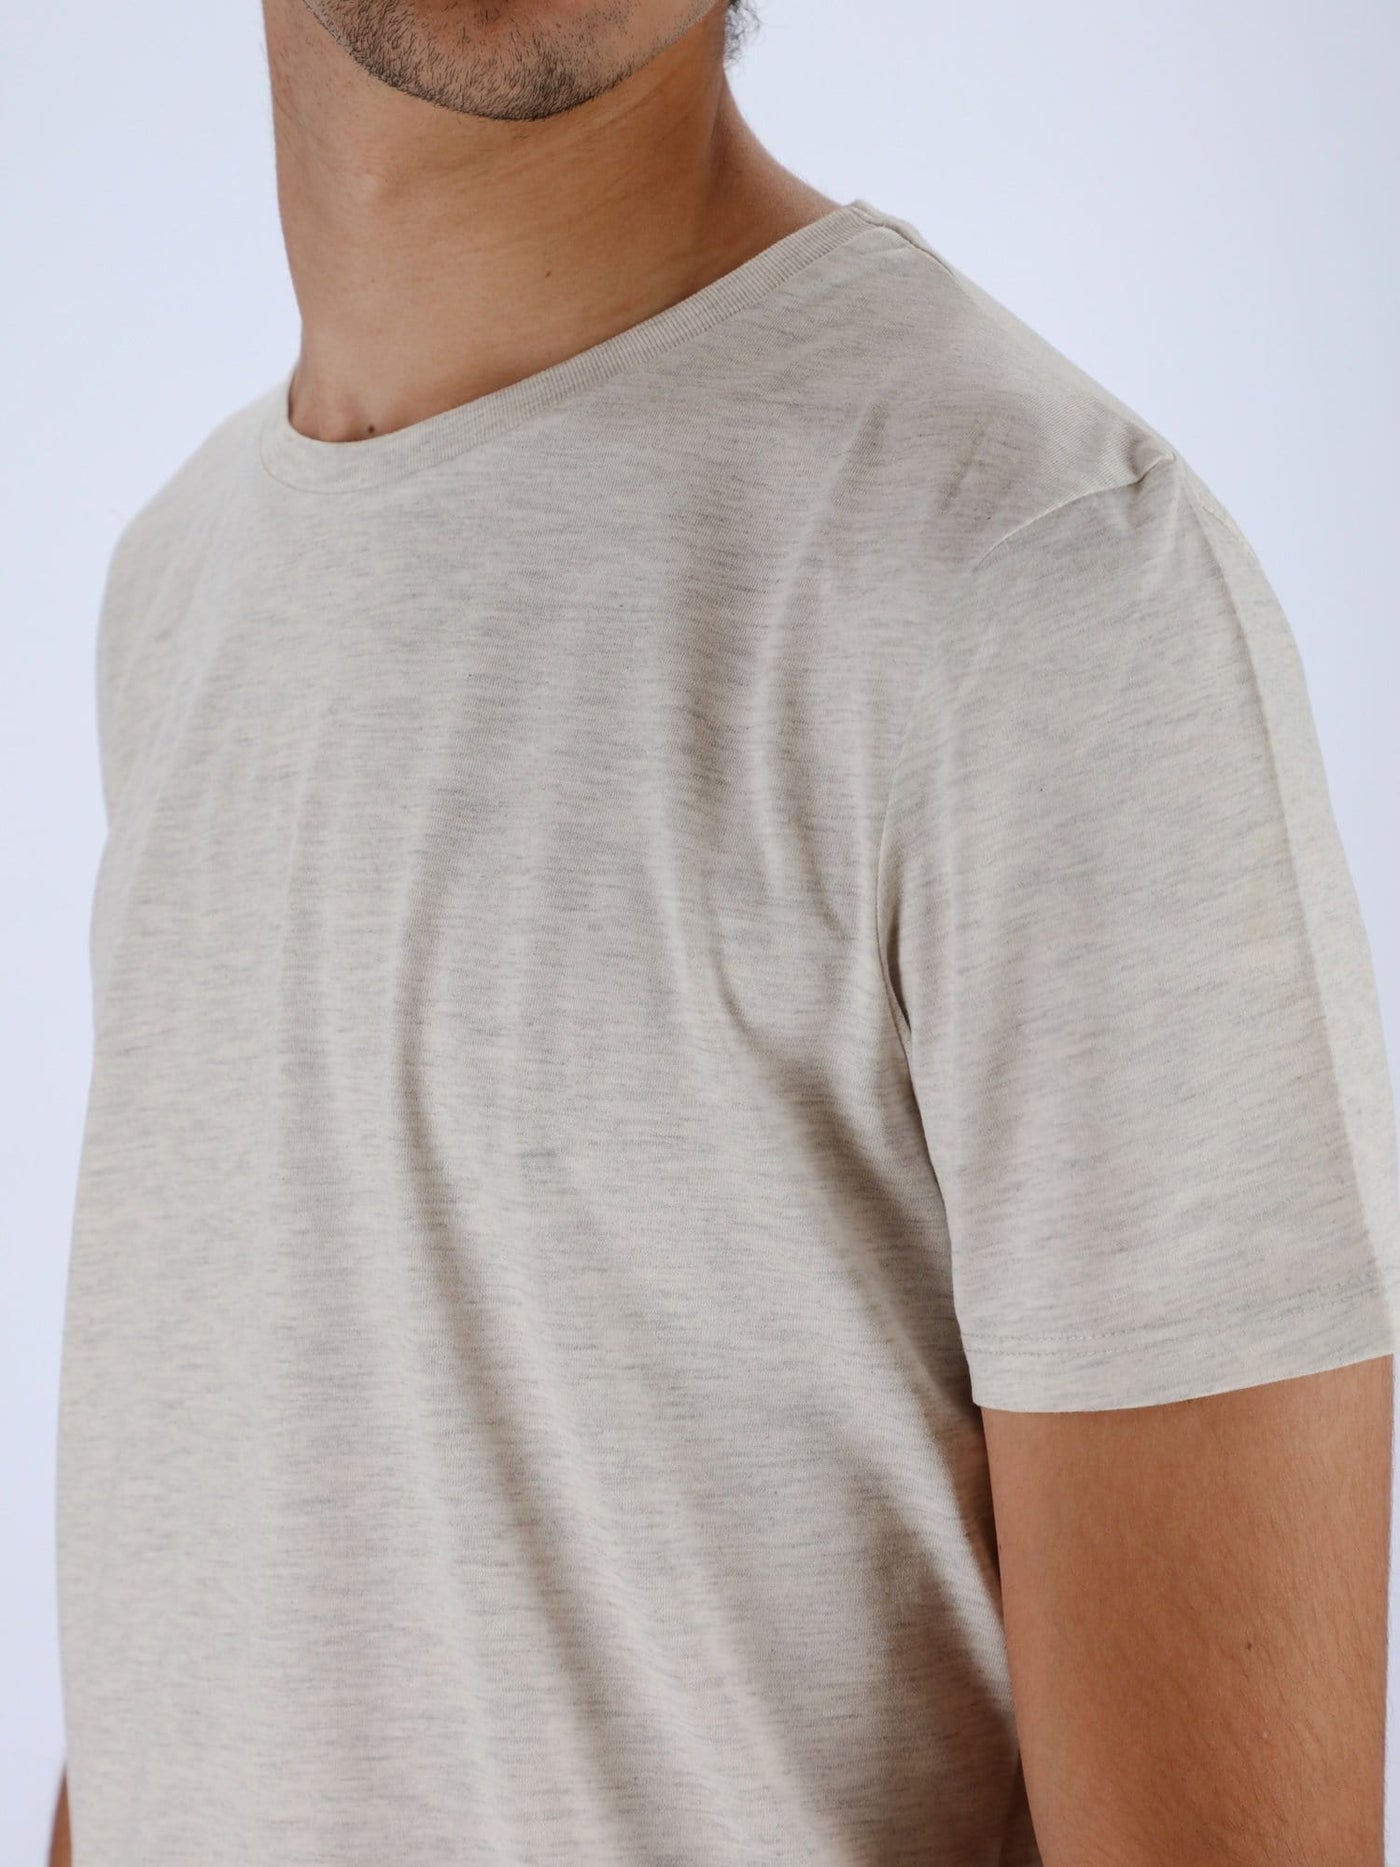 OR T-Shirts Off White Chine / M Basic Short Sleeve Round Neck Heather T-Shirt